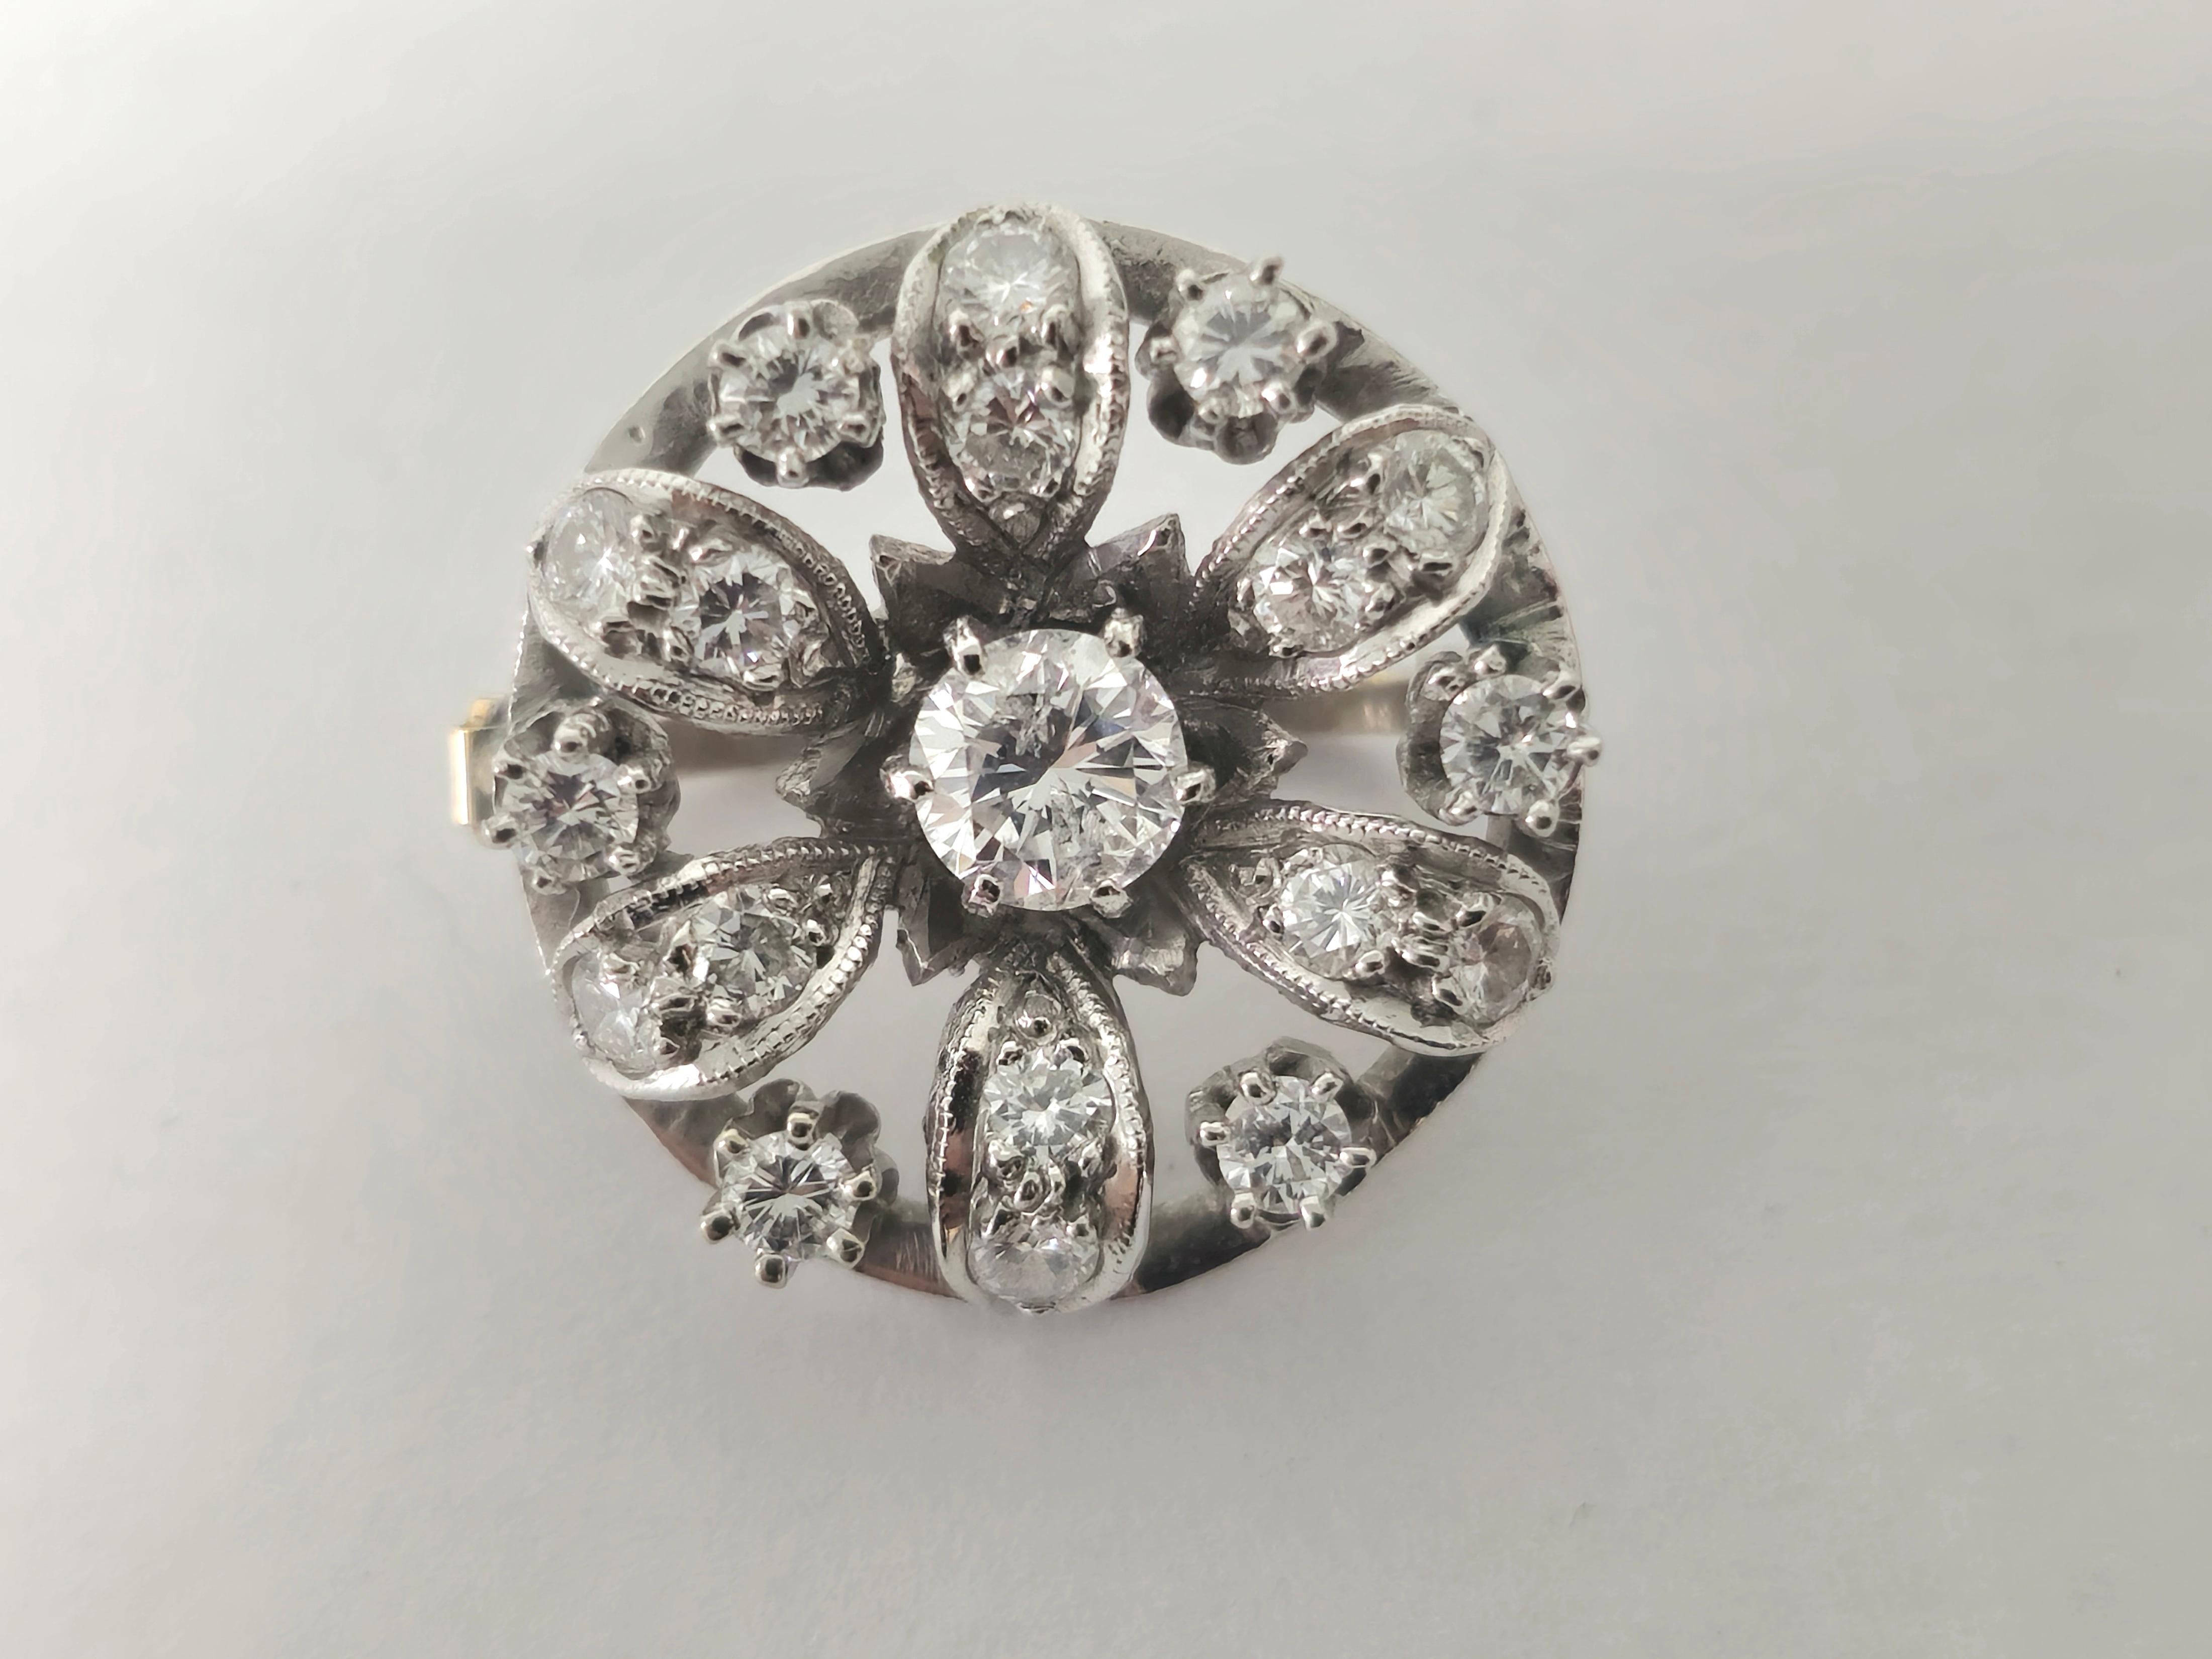 Cette épingle vintage en platine respire l'élégance et la sophistication intemporelles. Ornée d'un captivant diamant central pesant 0,50 carat et entourée de 1,25 carat de diamants éblouissants sur les côtés, cette pièce met en valeur le